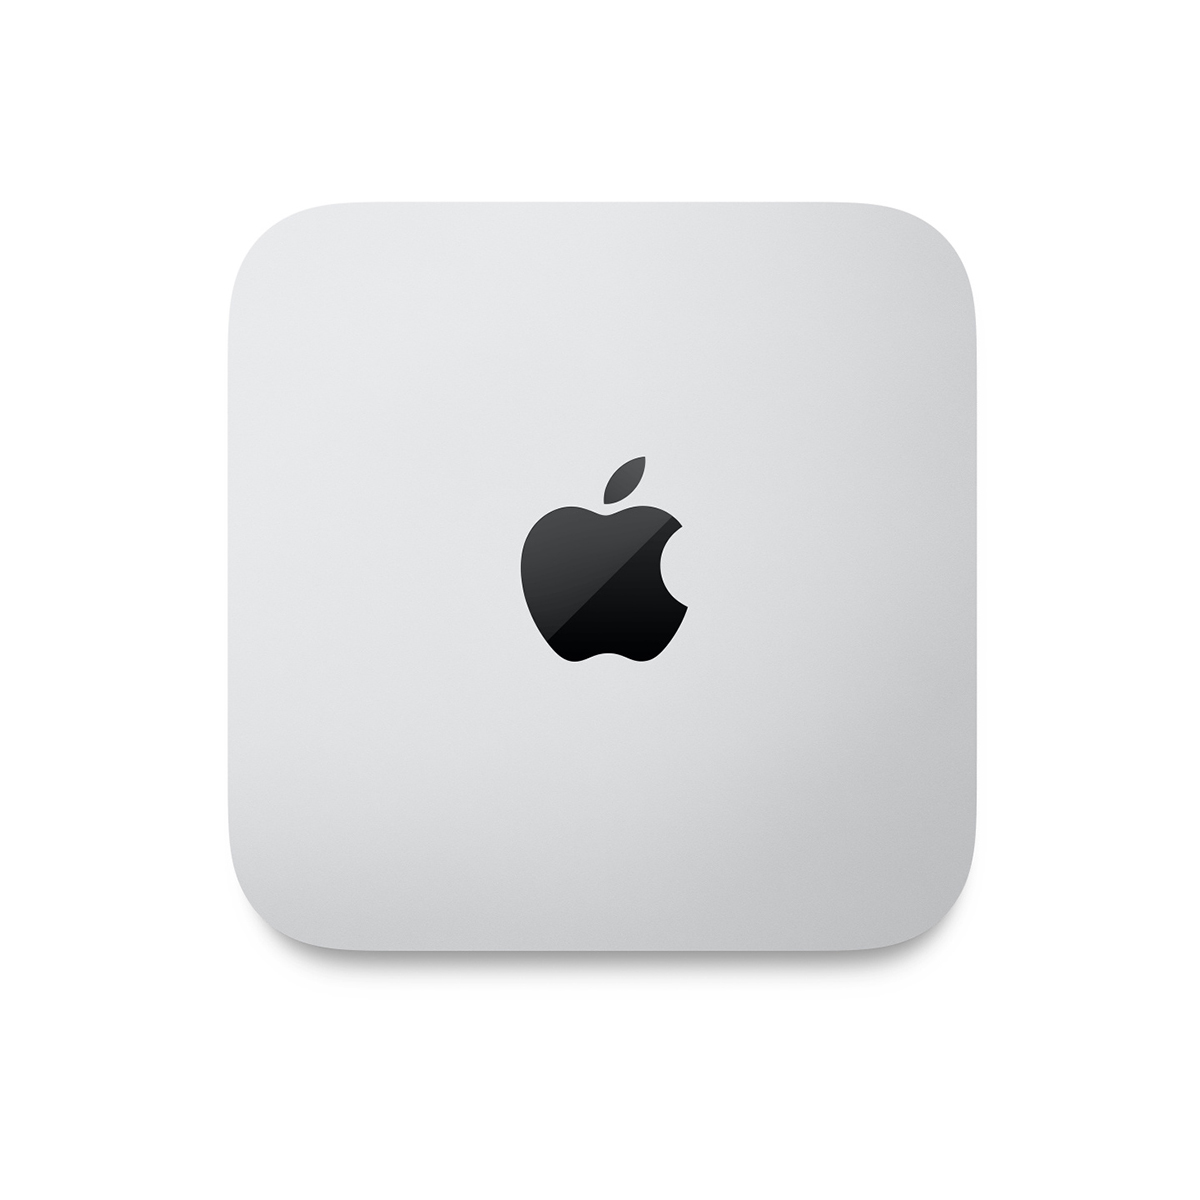 Mac mini: Apple M2 chip with 8core CPU and 10core GPU, 512GB SSD